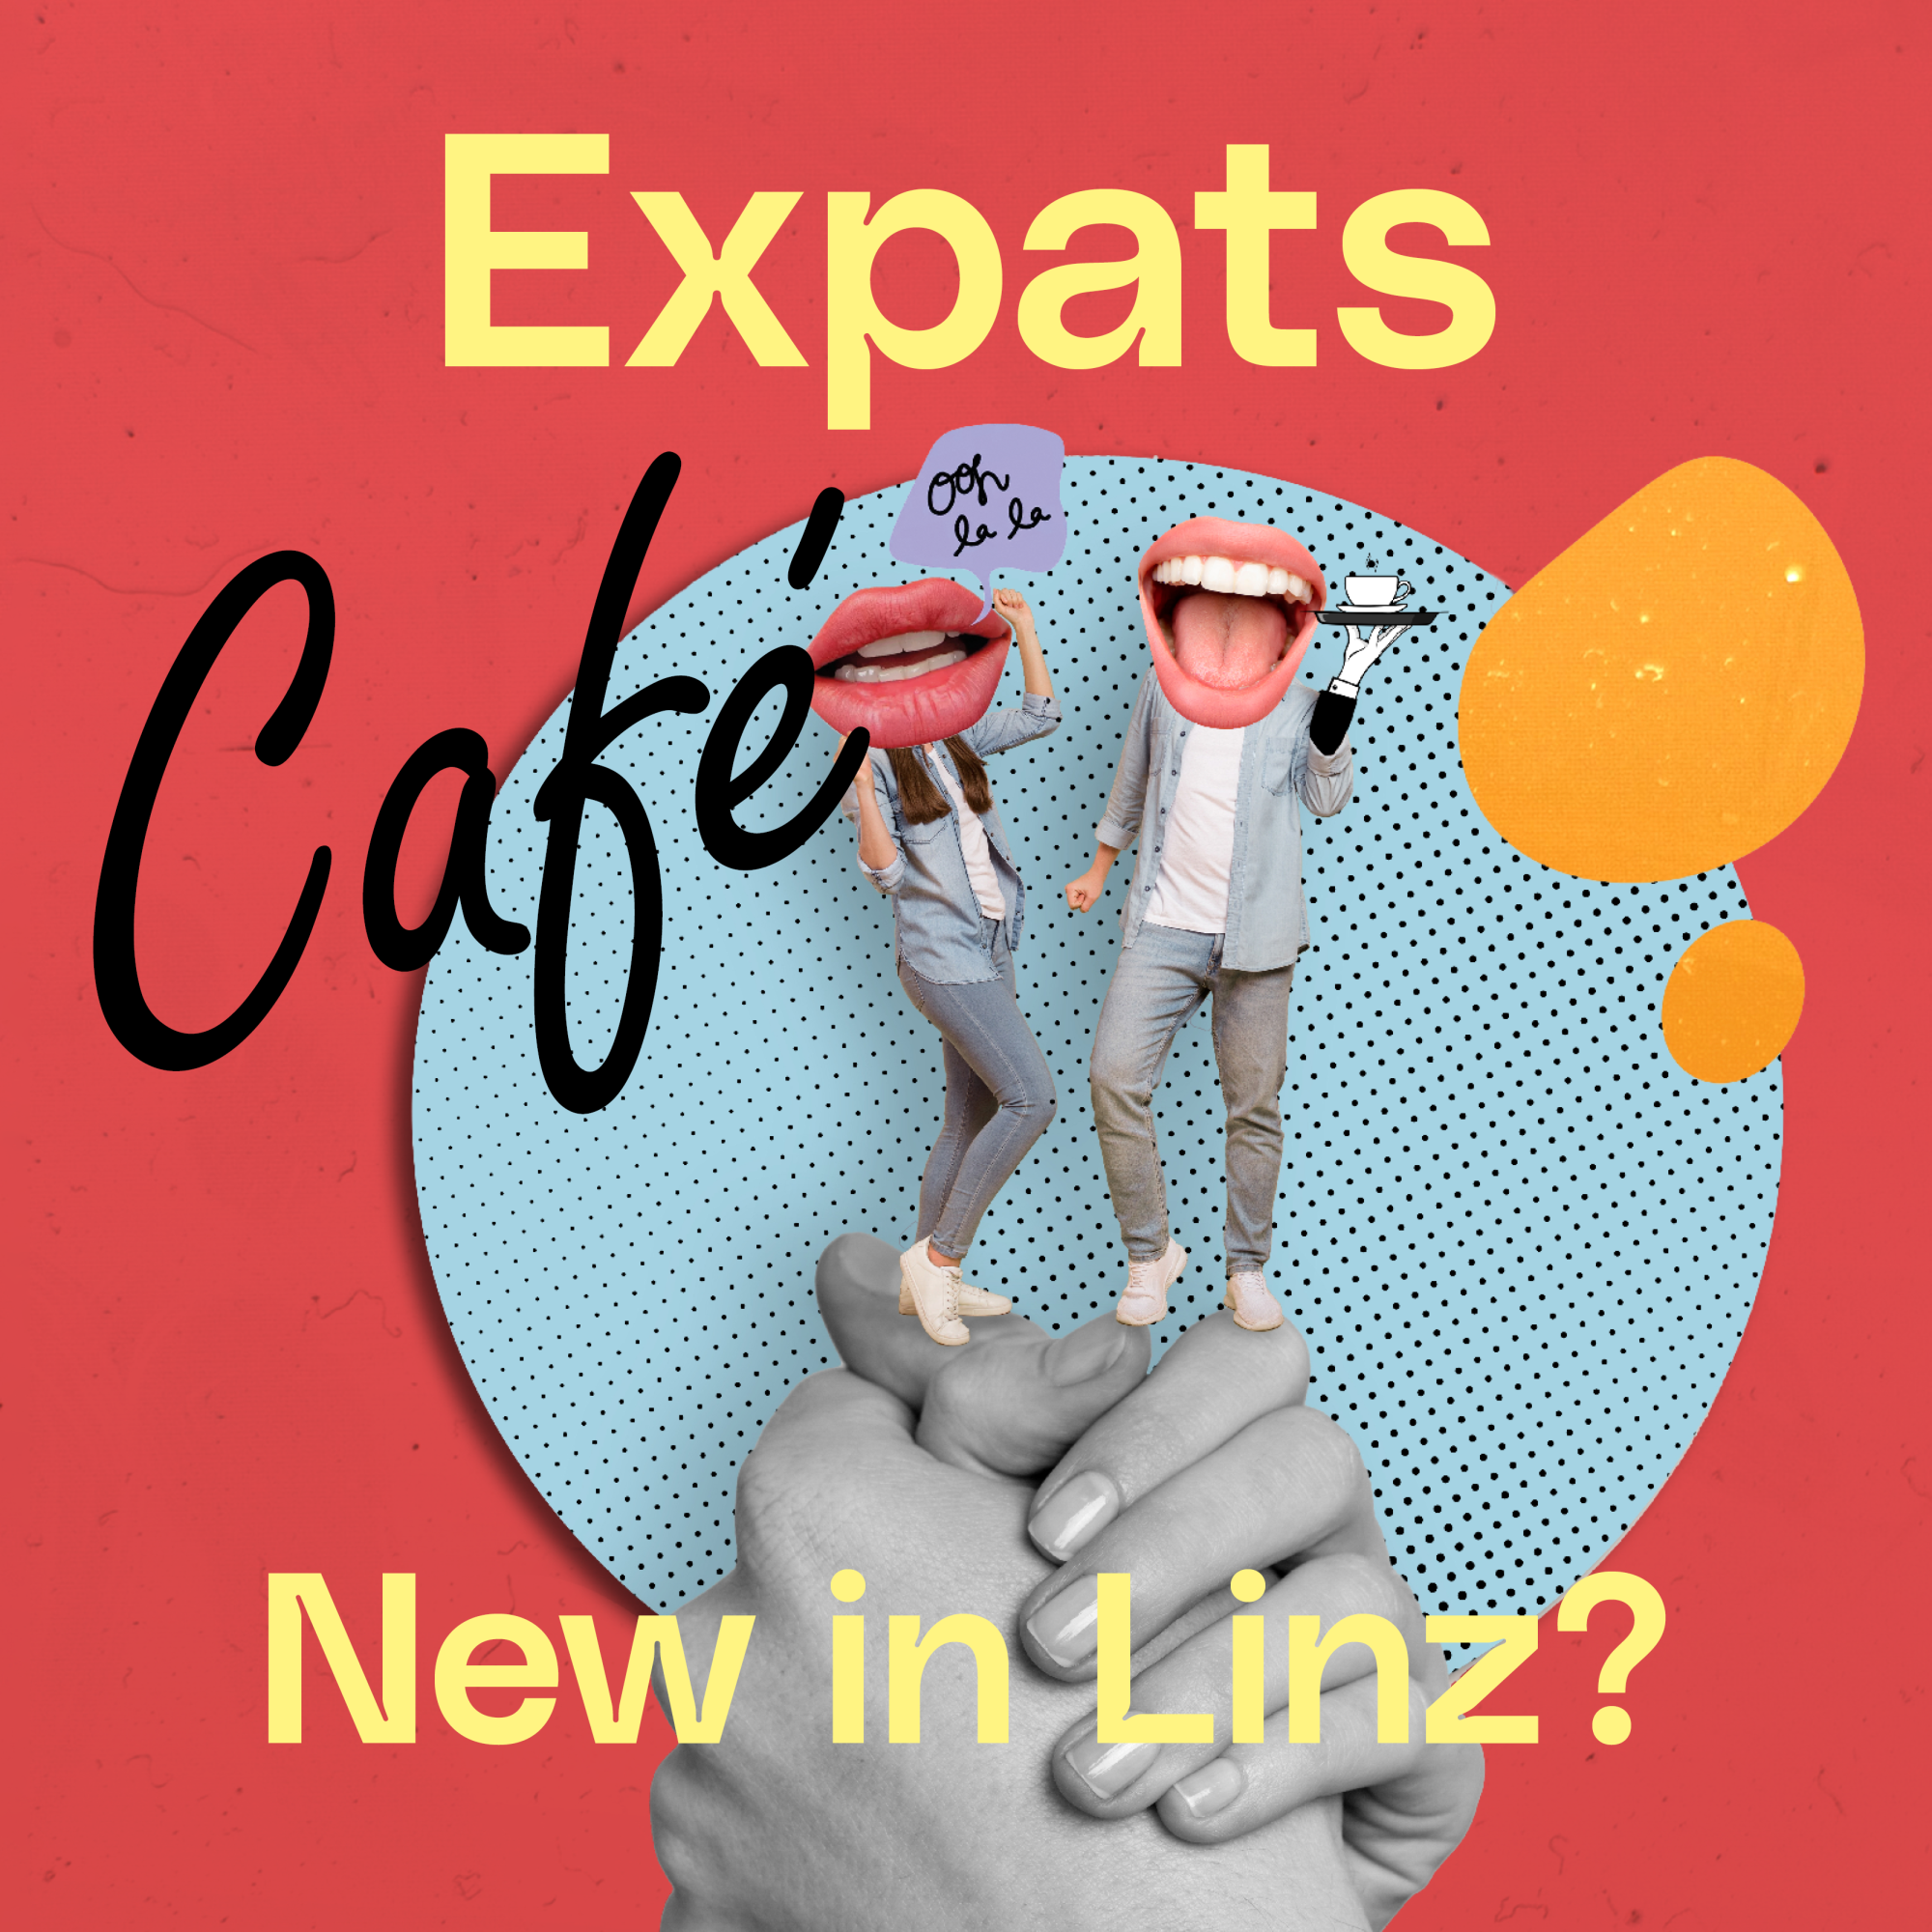 Expats Cafe quadr